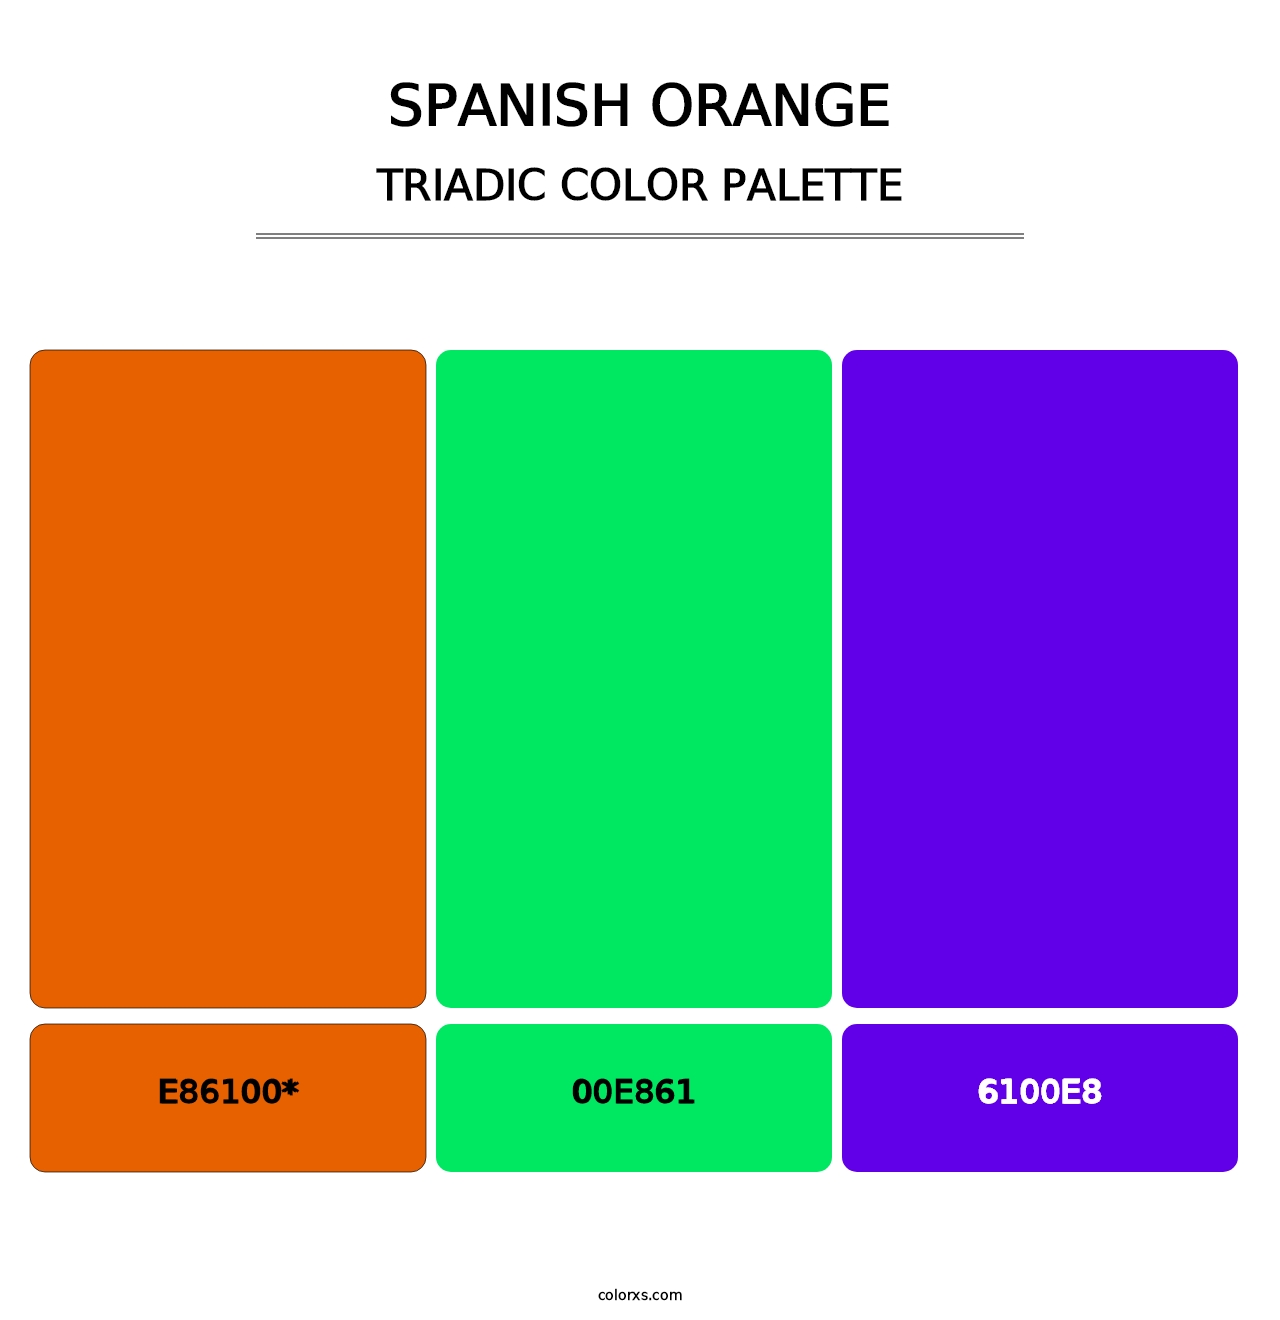 Spanish Orange - Triadic Color Palette